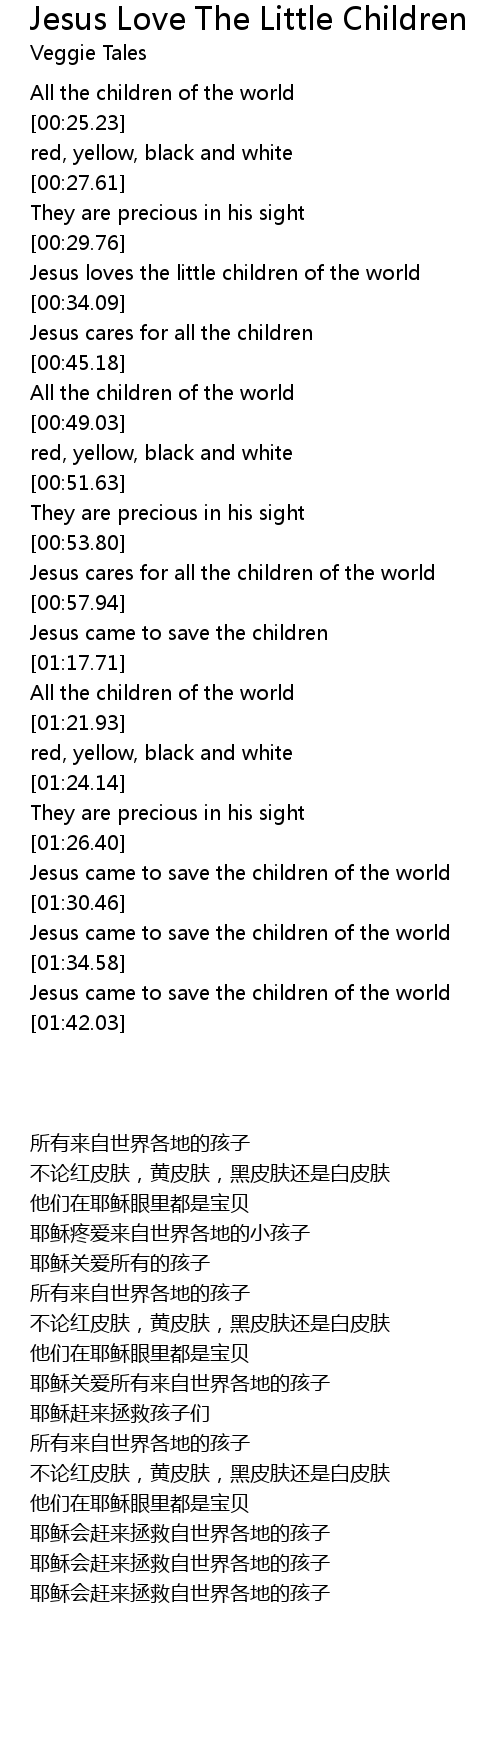 Jesus Love The Little Children Lyrics Follow Lyrics